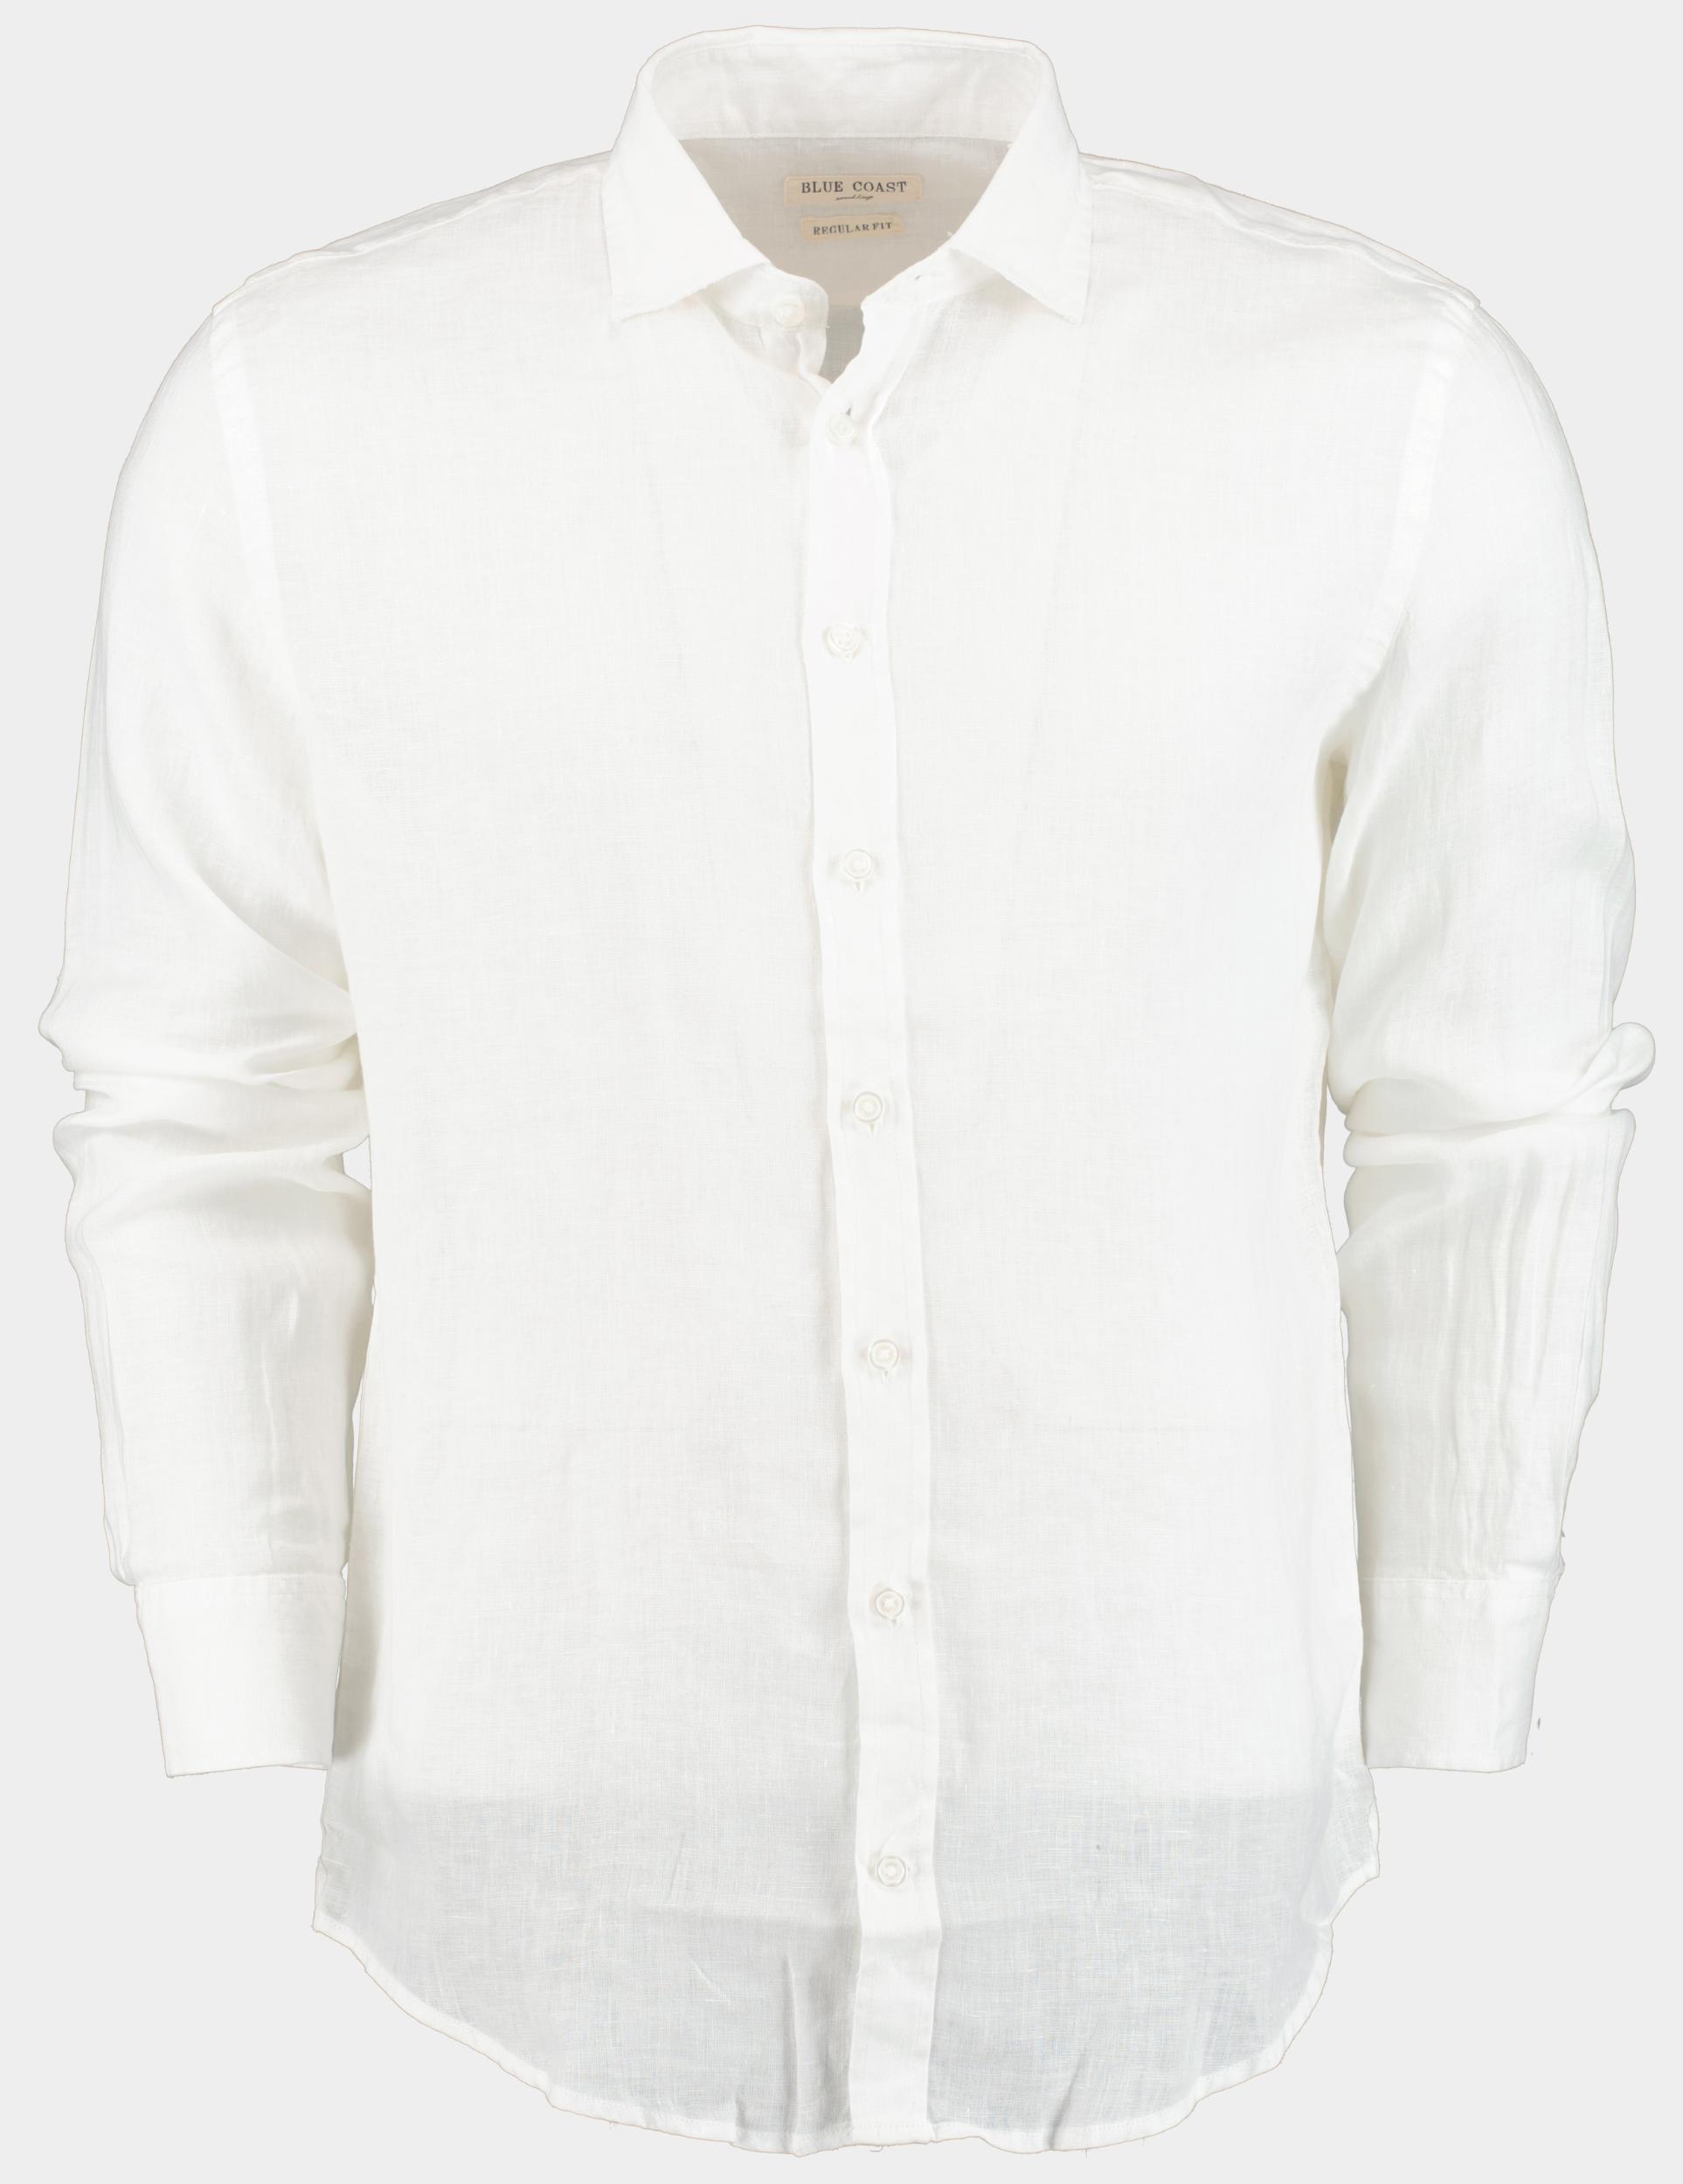 Blue Coast Casual hemd lange mouw Wit 100% Linnen MOB118 Uni/00 blanco